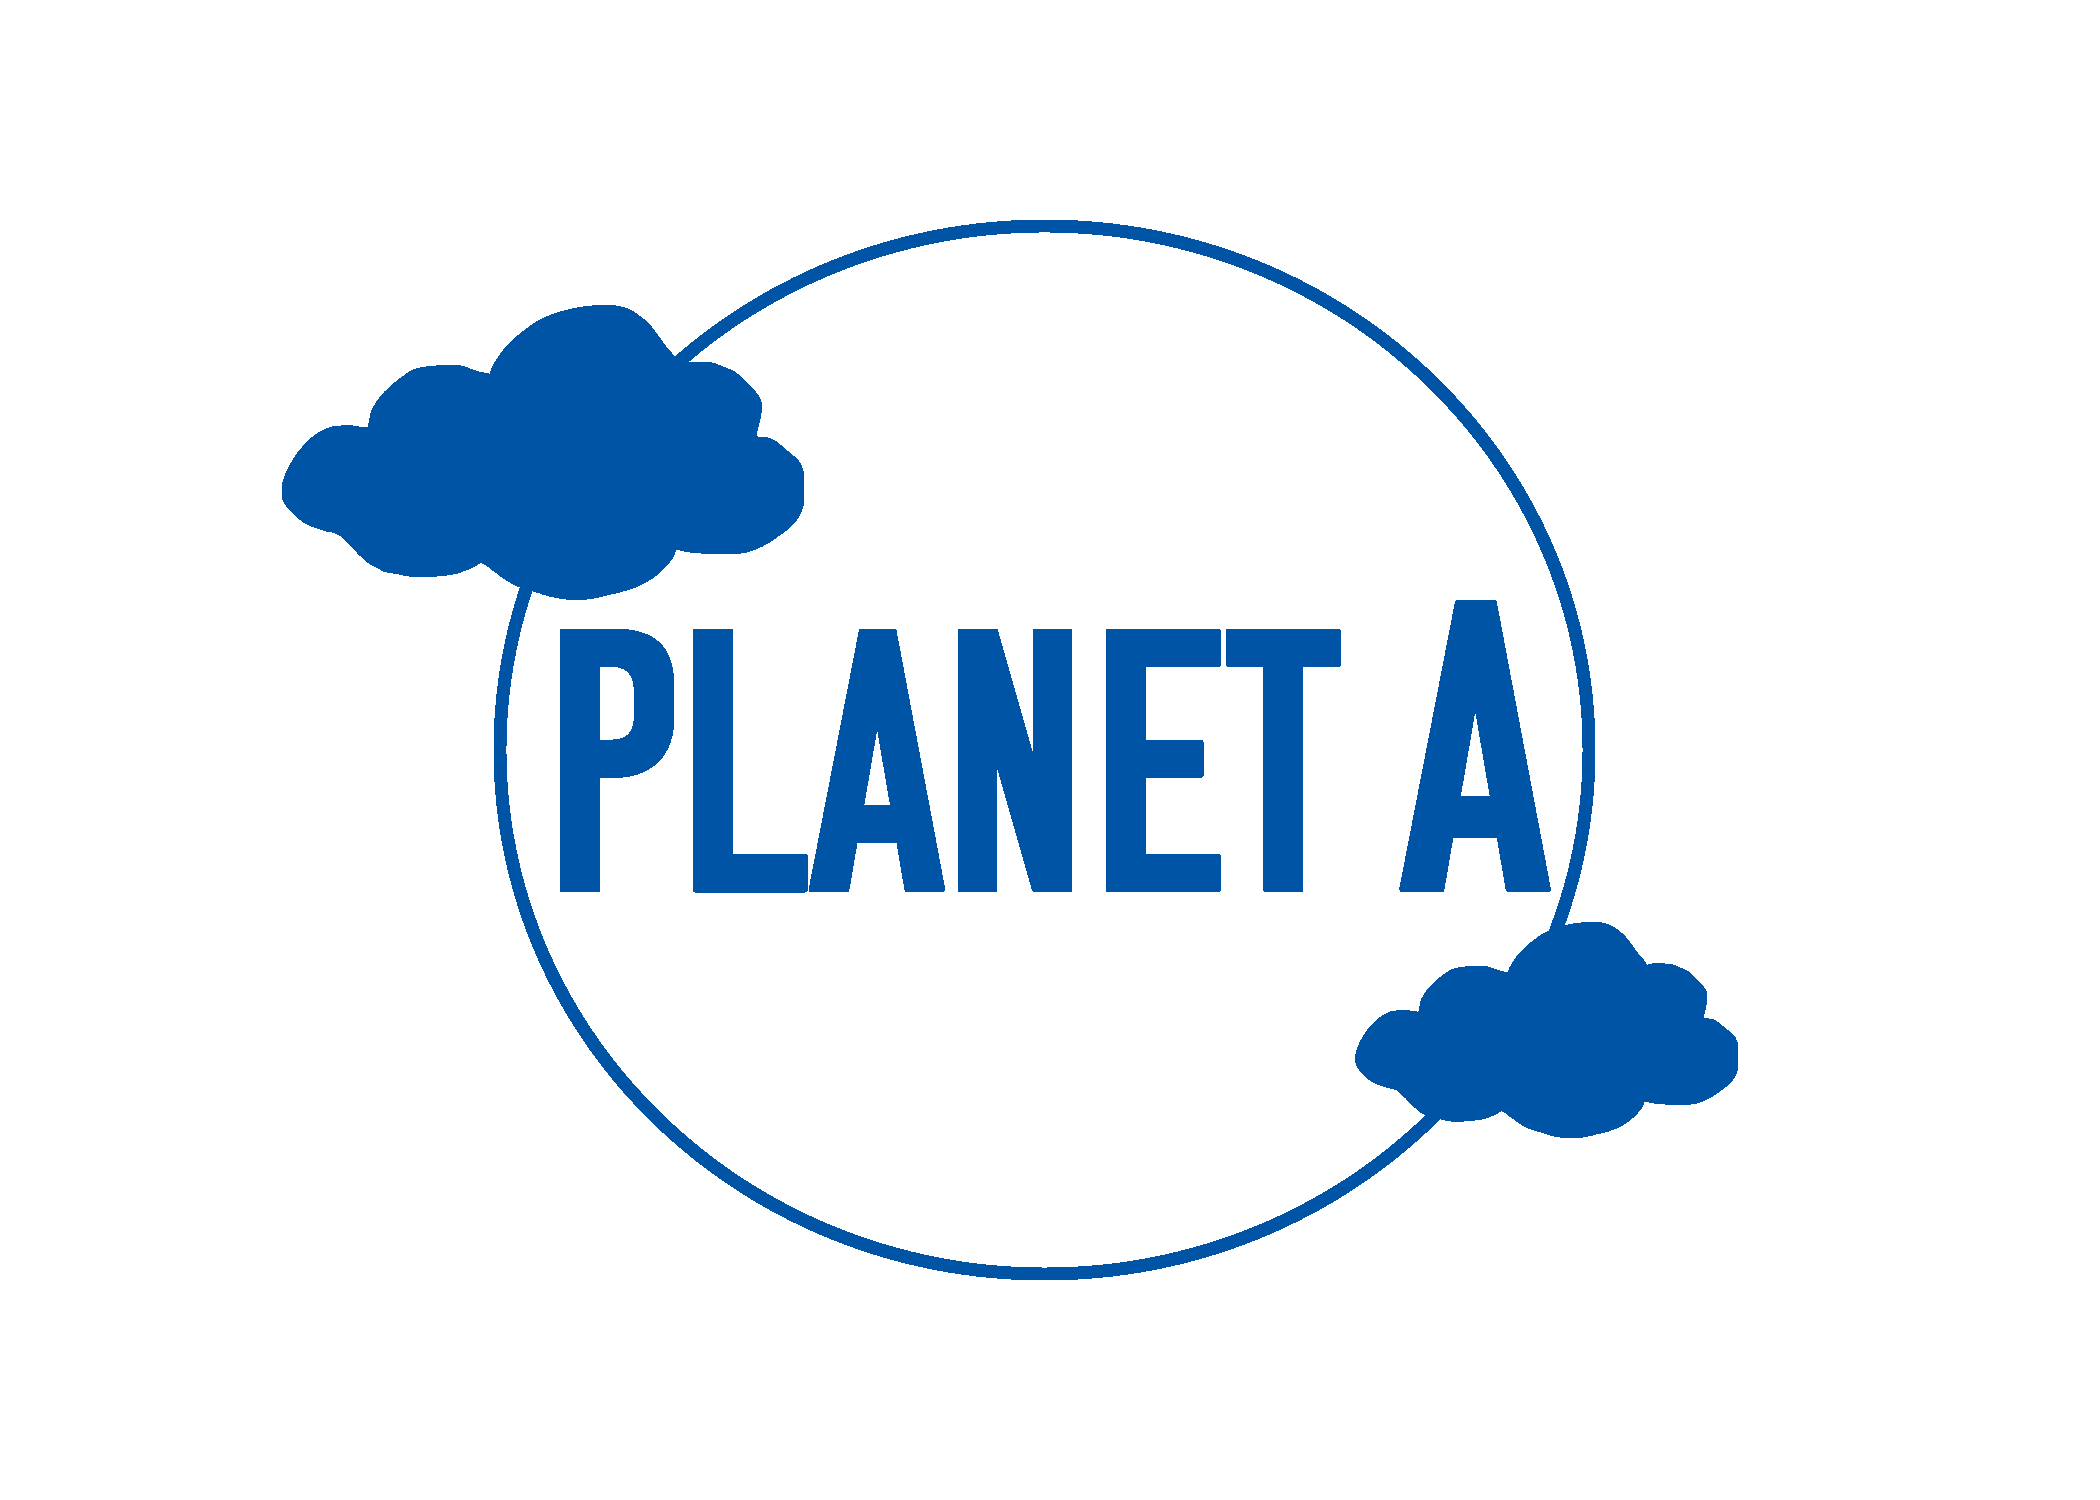 Planet A